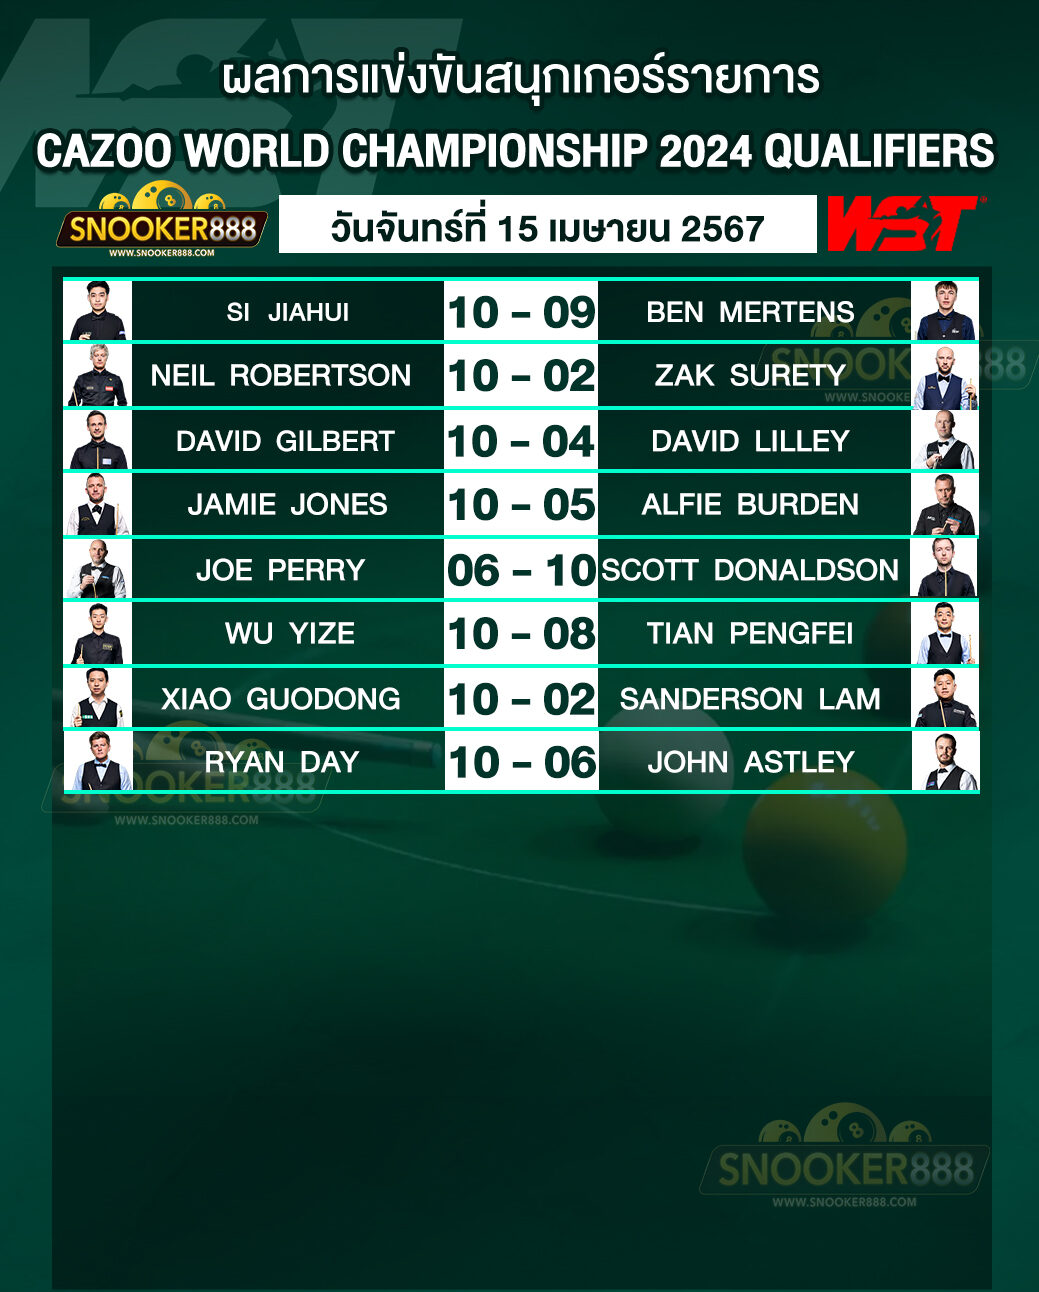 ผลการแข่งขันสนุกเกอร์ CAZOO WORLD CHAMPIONSHIP 2024 QUALIFIERS วันที่ 15 เม.ย. 67